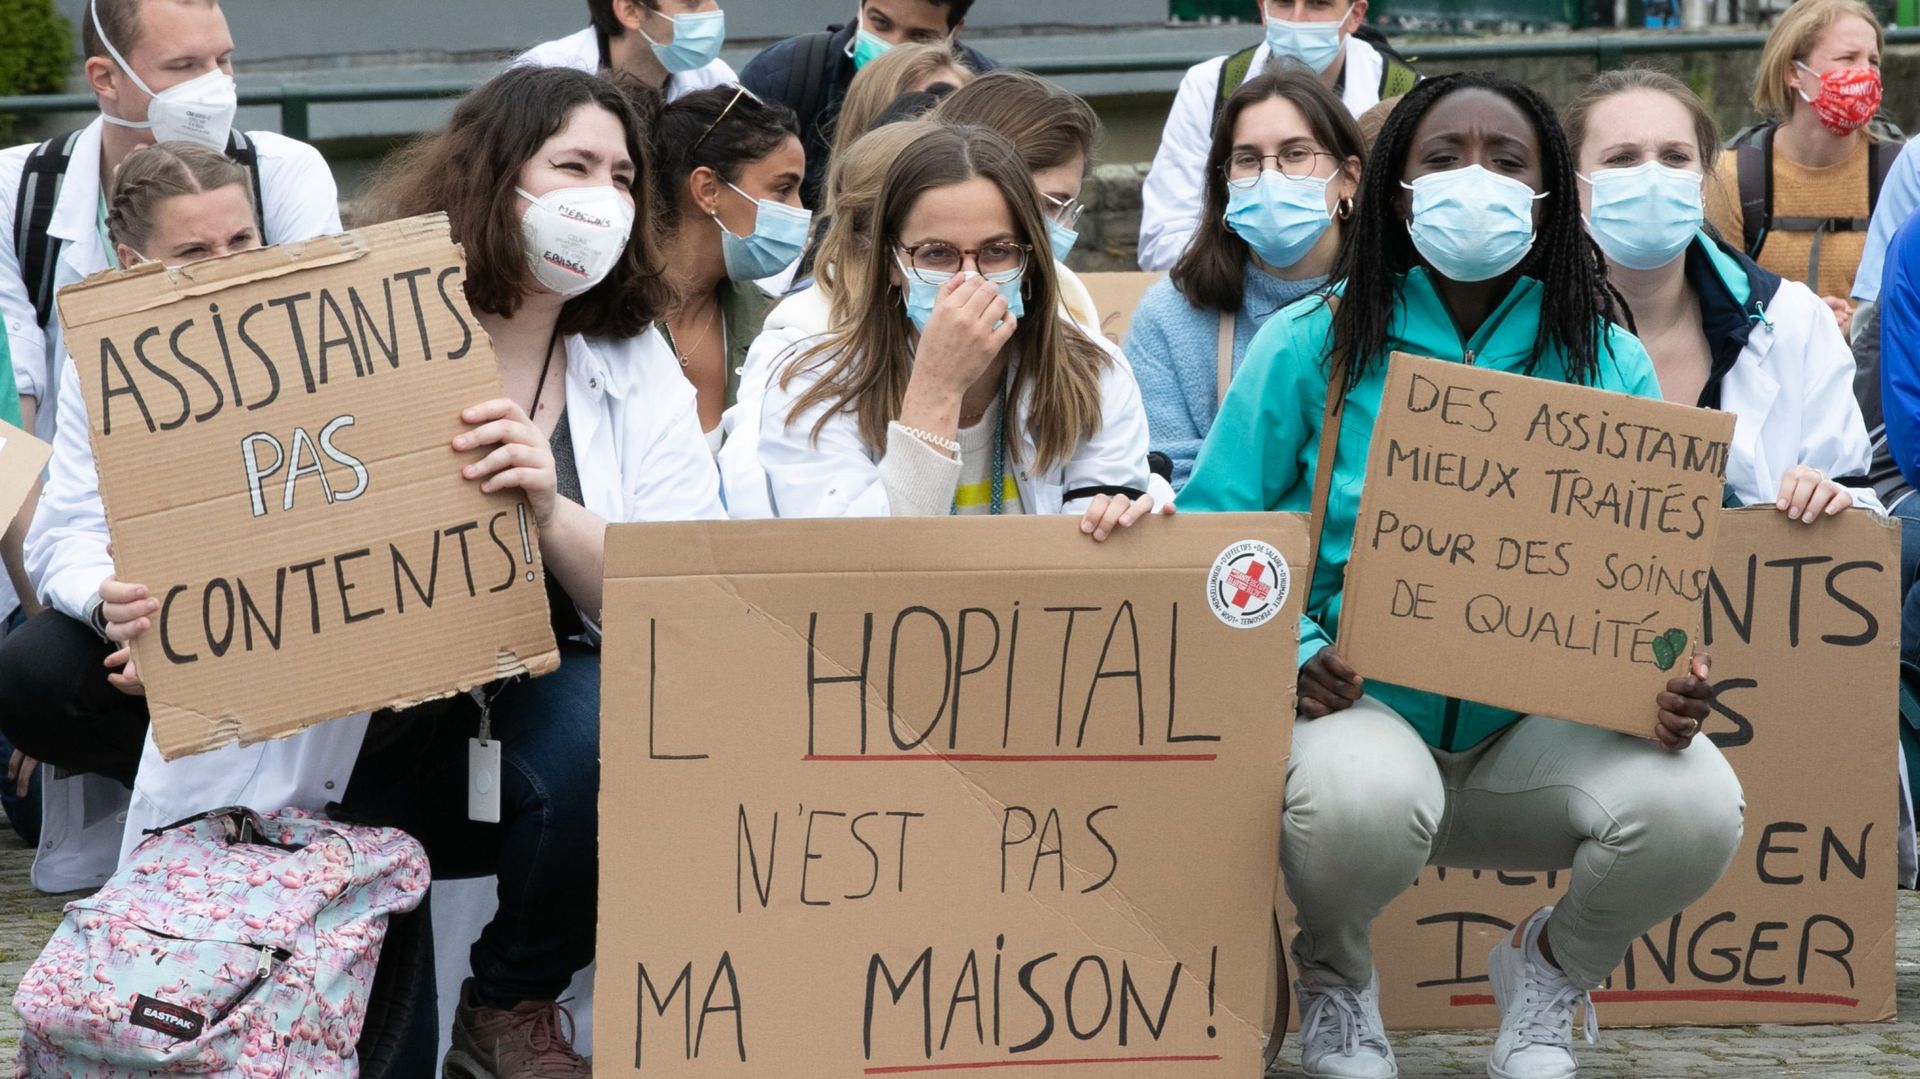 Si les hôpitaux universitaires francophones avaient évoqué une "grève pénalisante" des médecins en formation la semaine dernière, ces dernier estiment qu'il a "mis en exergue" leur rôle "essentiel au sein du système hospitalier"